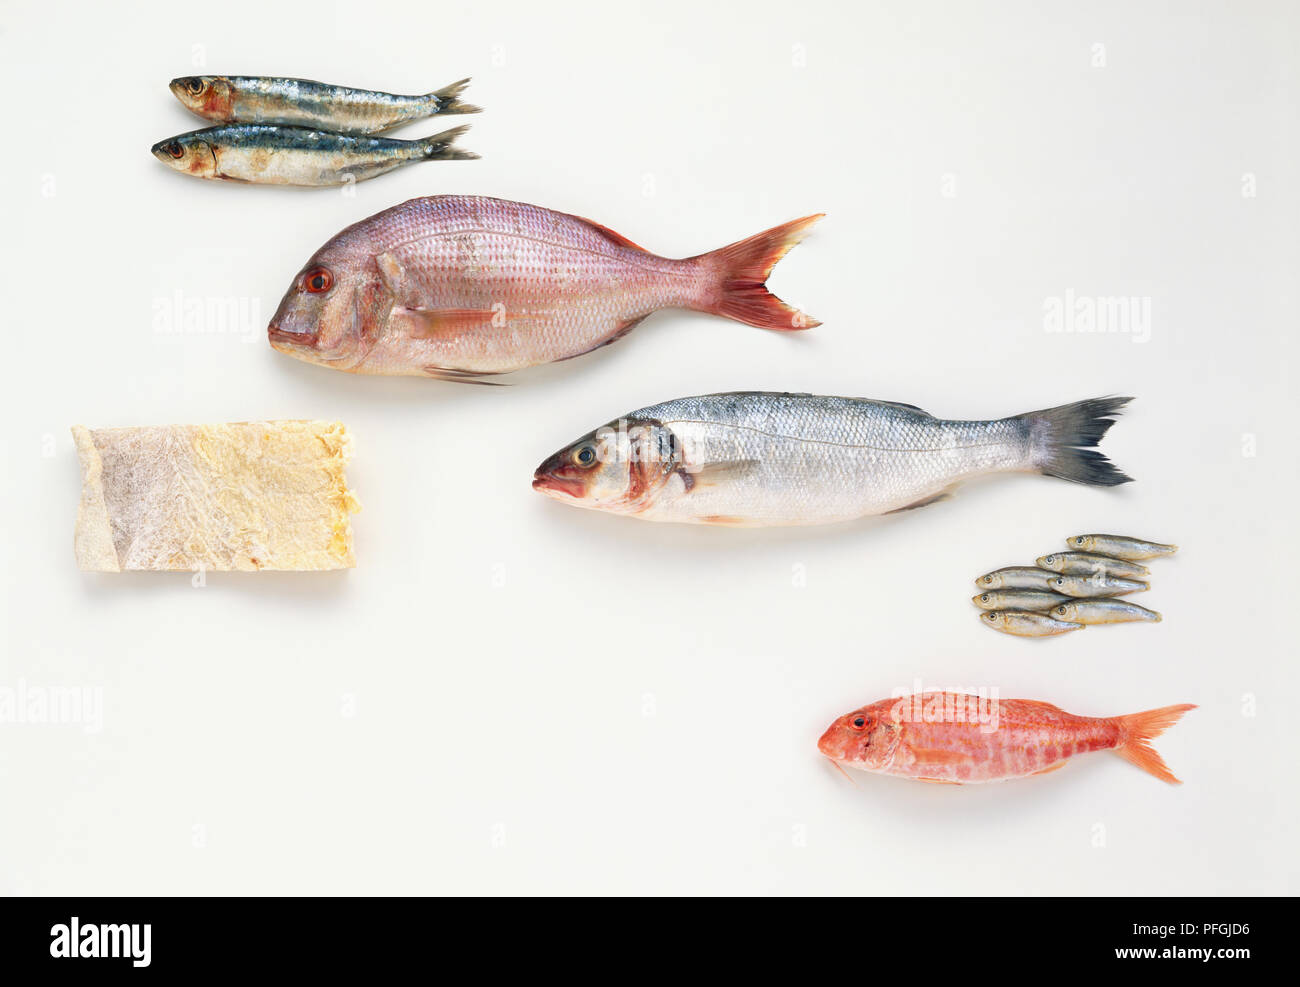 Des poissons fraîchement pêchés, y compris, de haut en bas, les sardines, la daurade, loup de mer, friture et rougets, et un morceau de morue salée, vue de côté. Banque D'Images